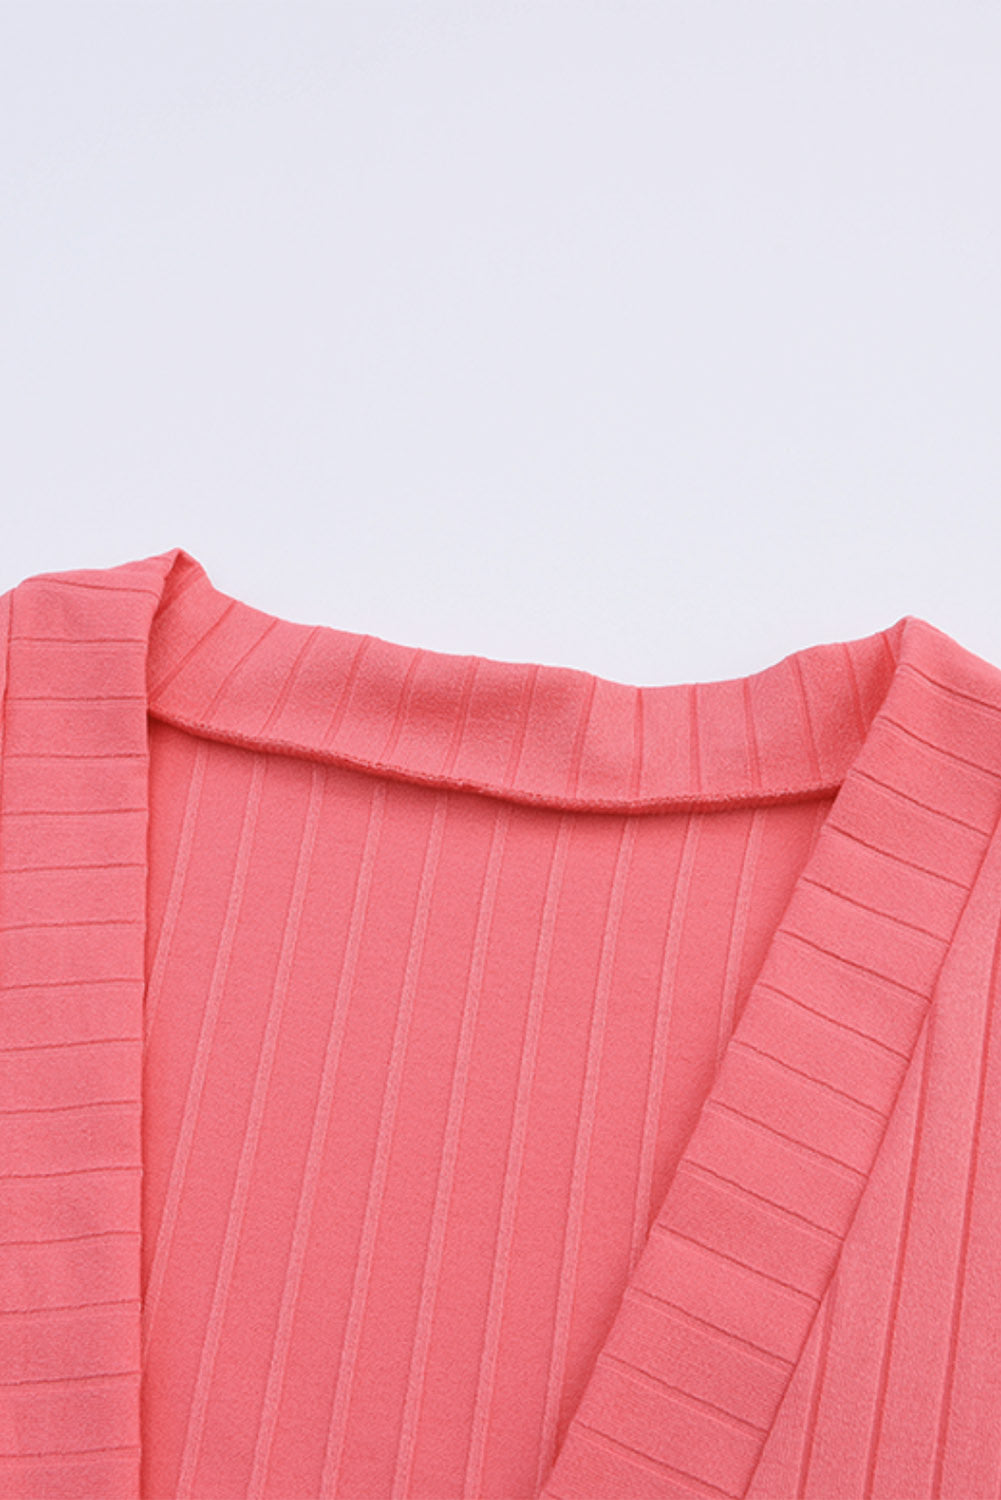 Cardigan in maglia rosa con tasca frontale aperta